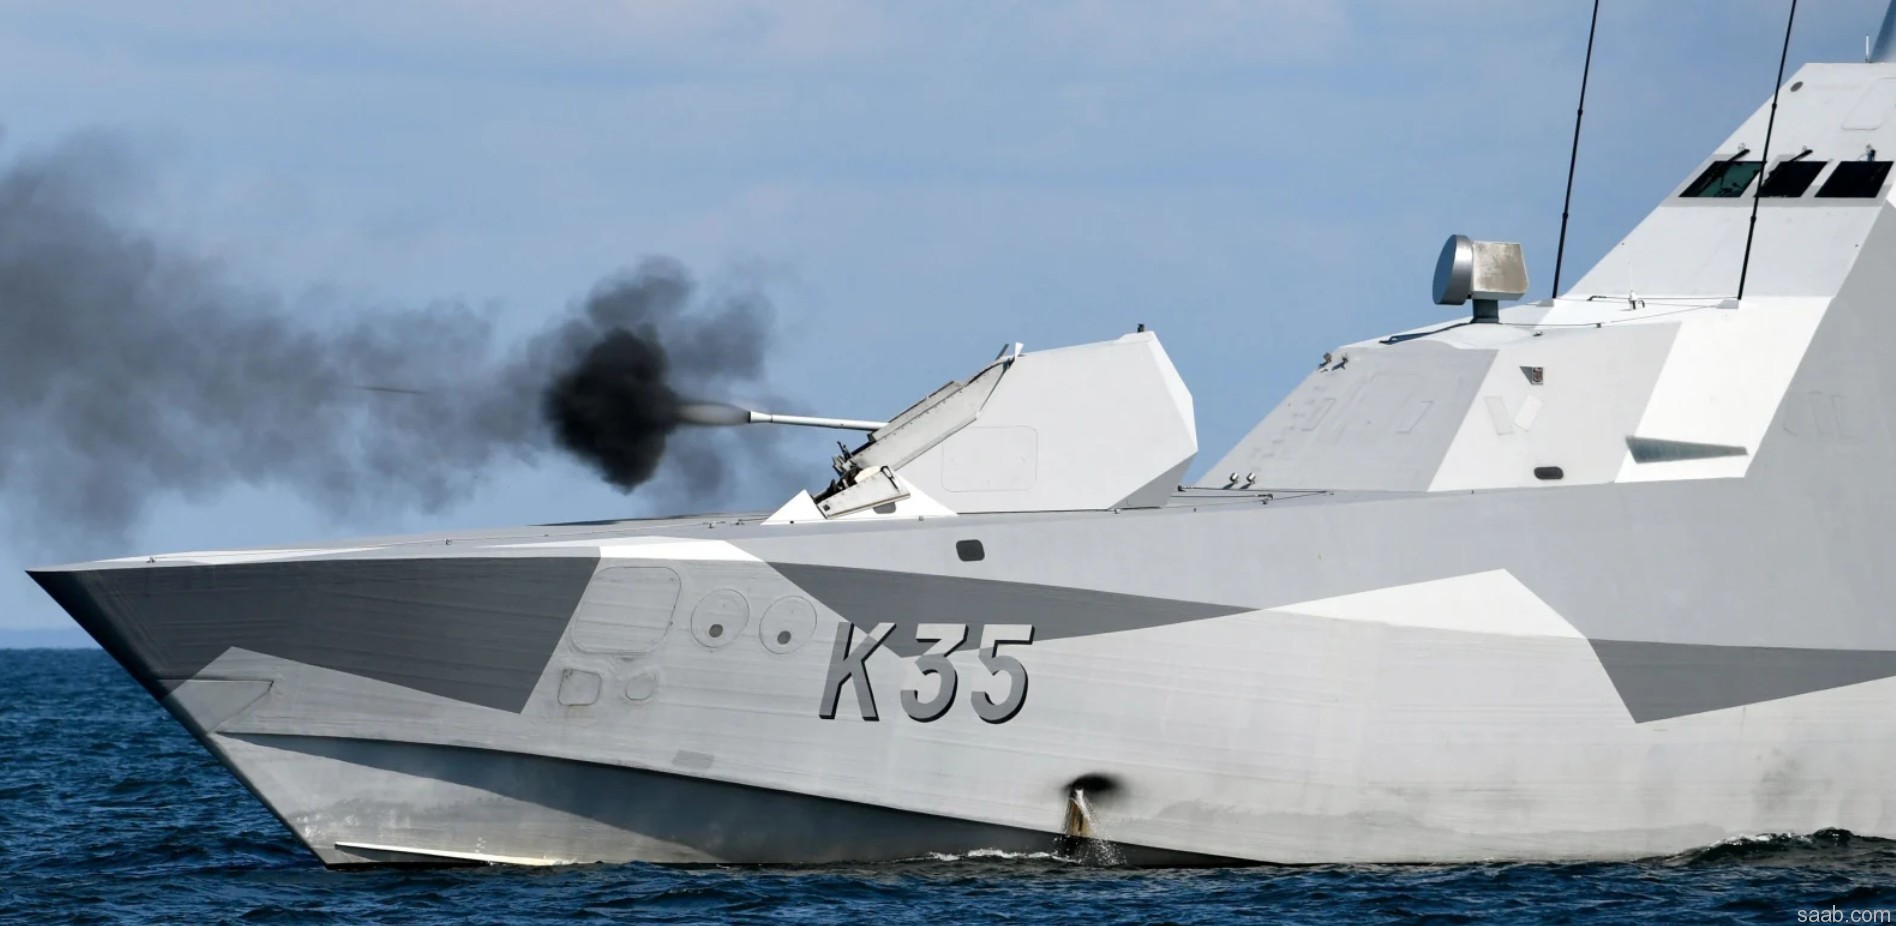 visby class corvette royal swedish navy korvett svenska marinen bofors mk.3 57mm 70-caliber gun 29a